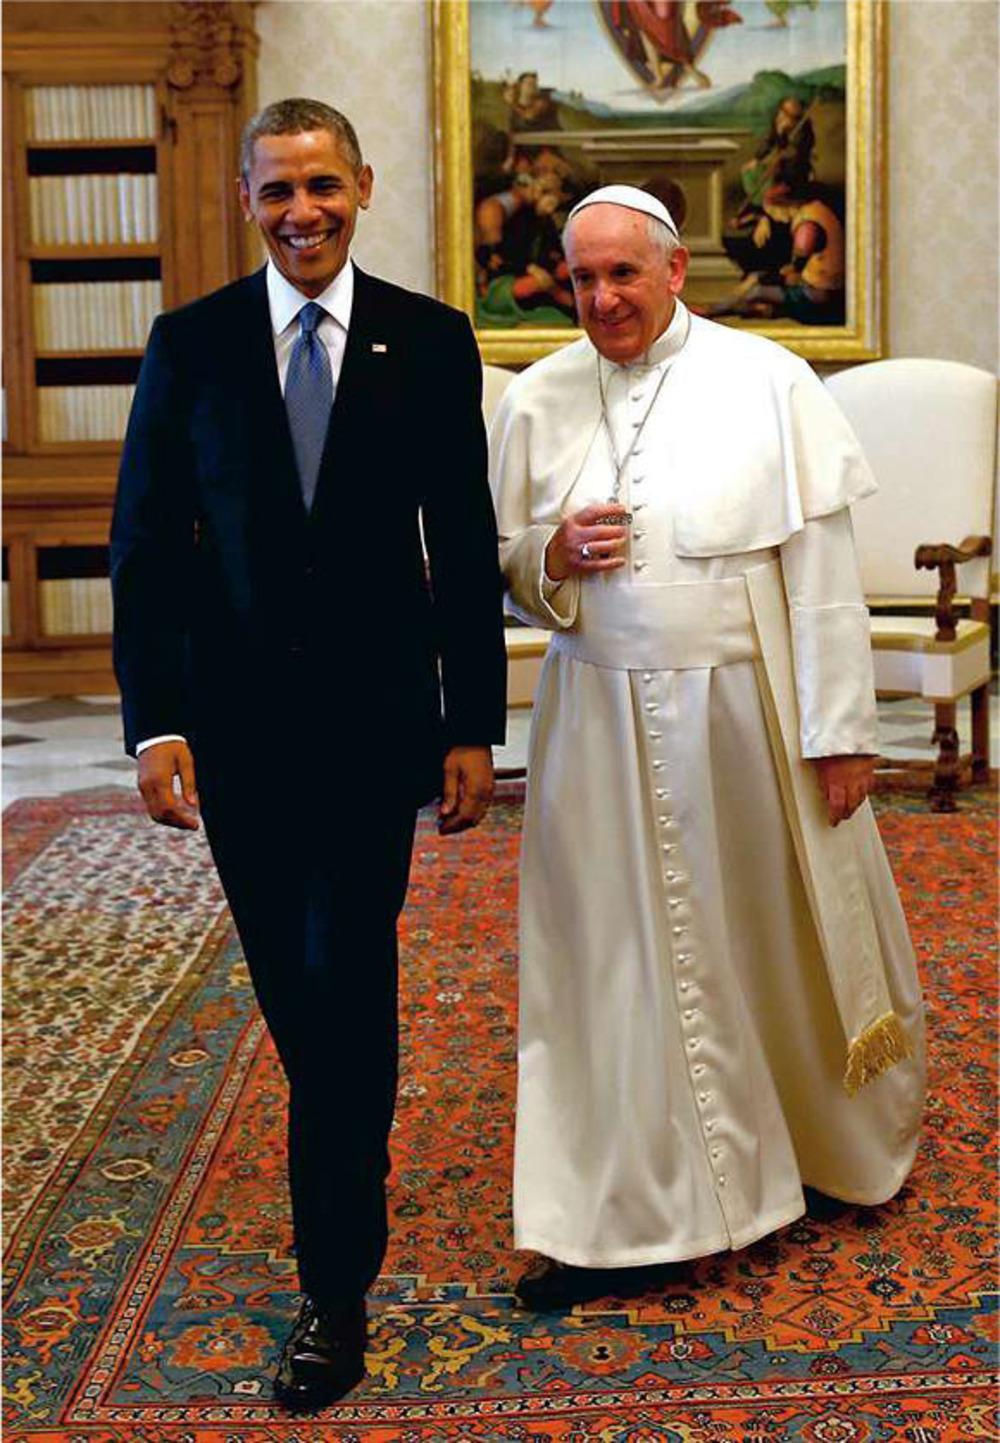 Maart 2014, ontmoeting in het Vaticaan: paus Franciscus en Barack Obama, president van de Verenigde Staten.